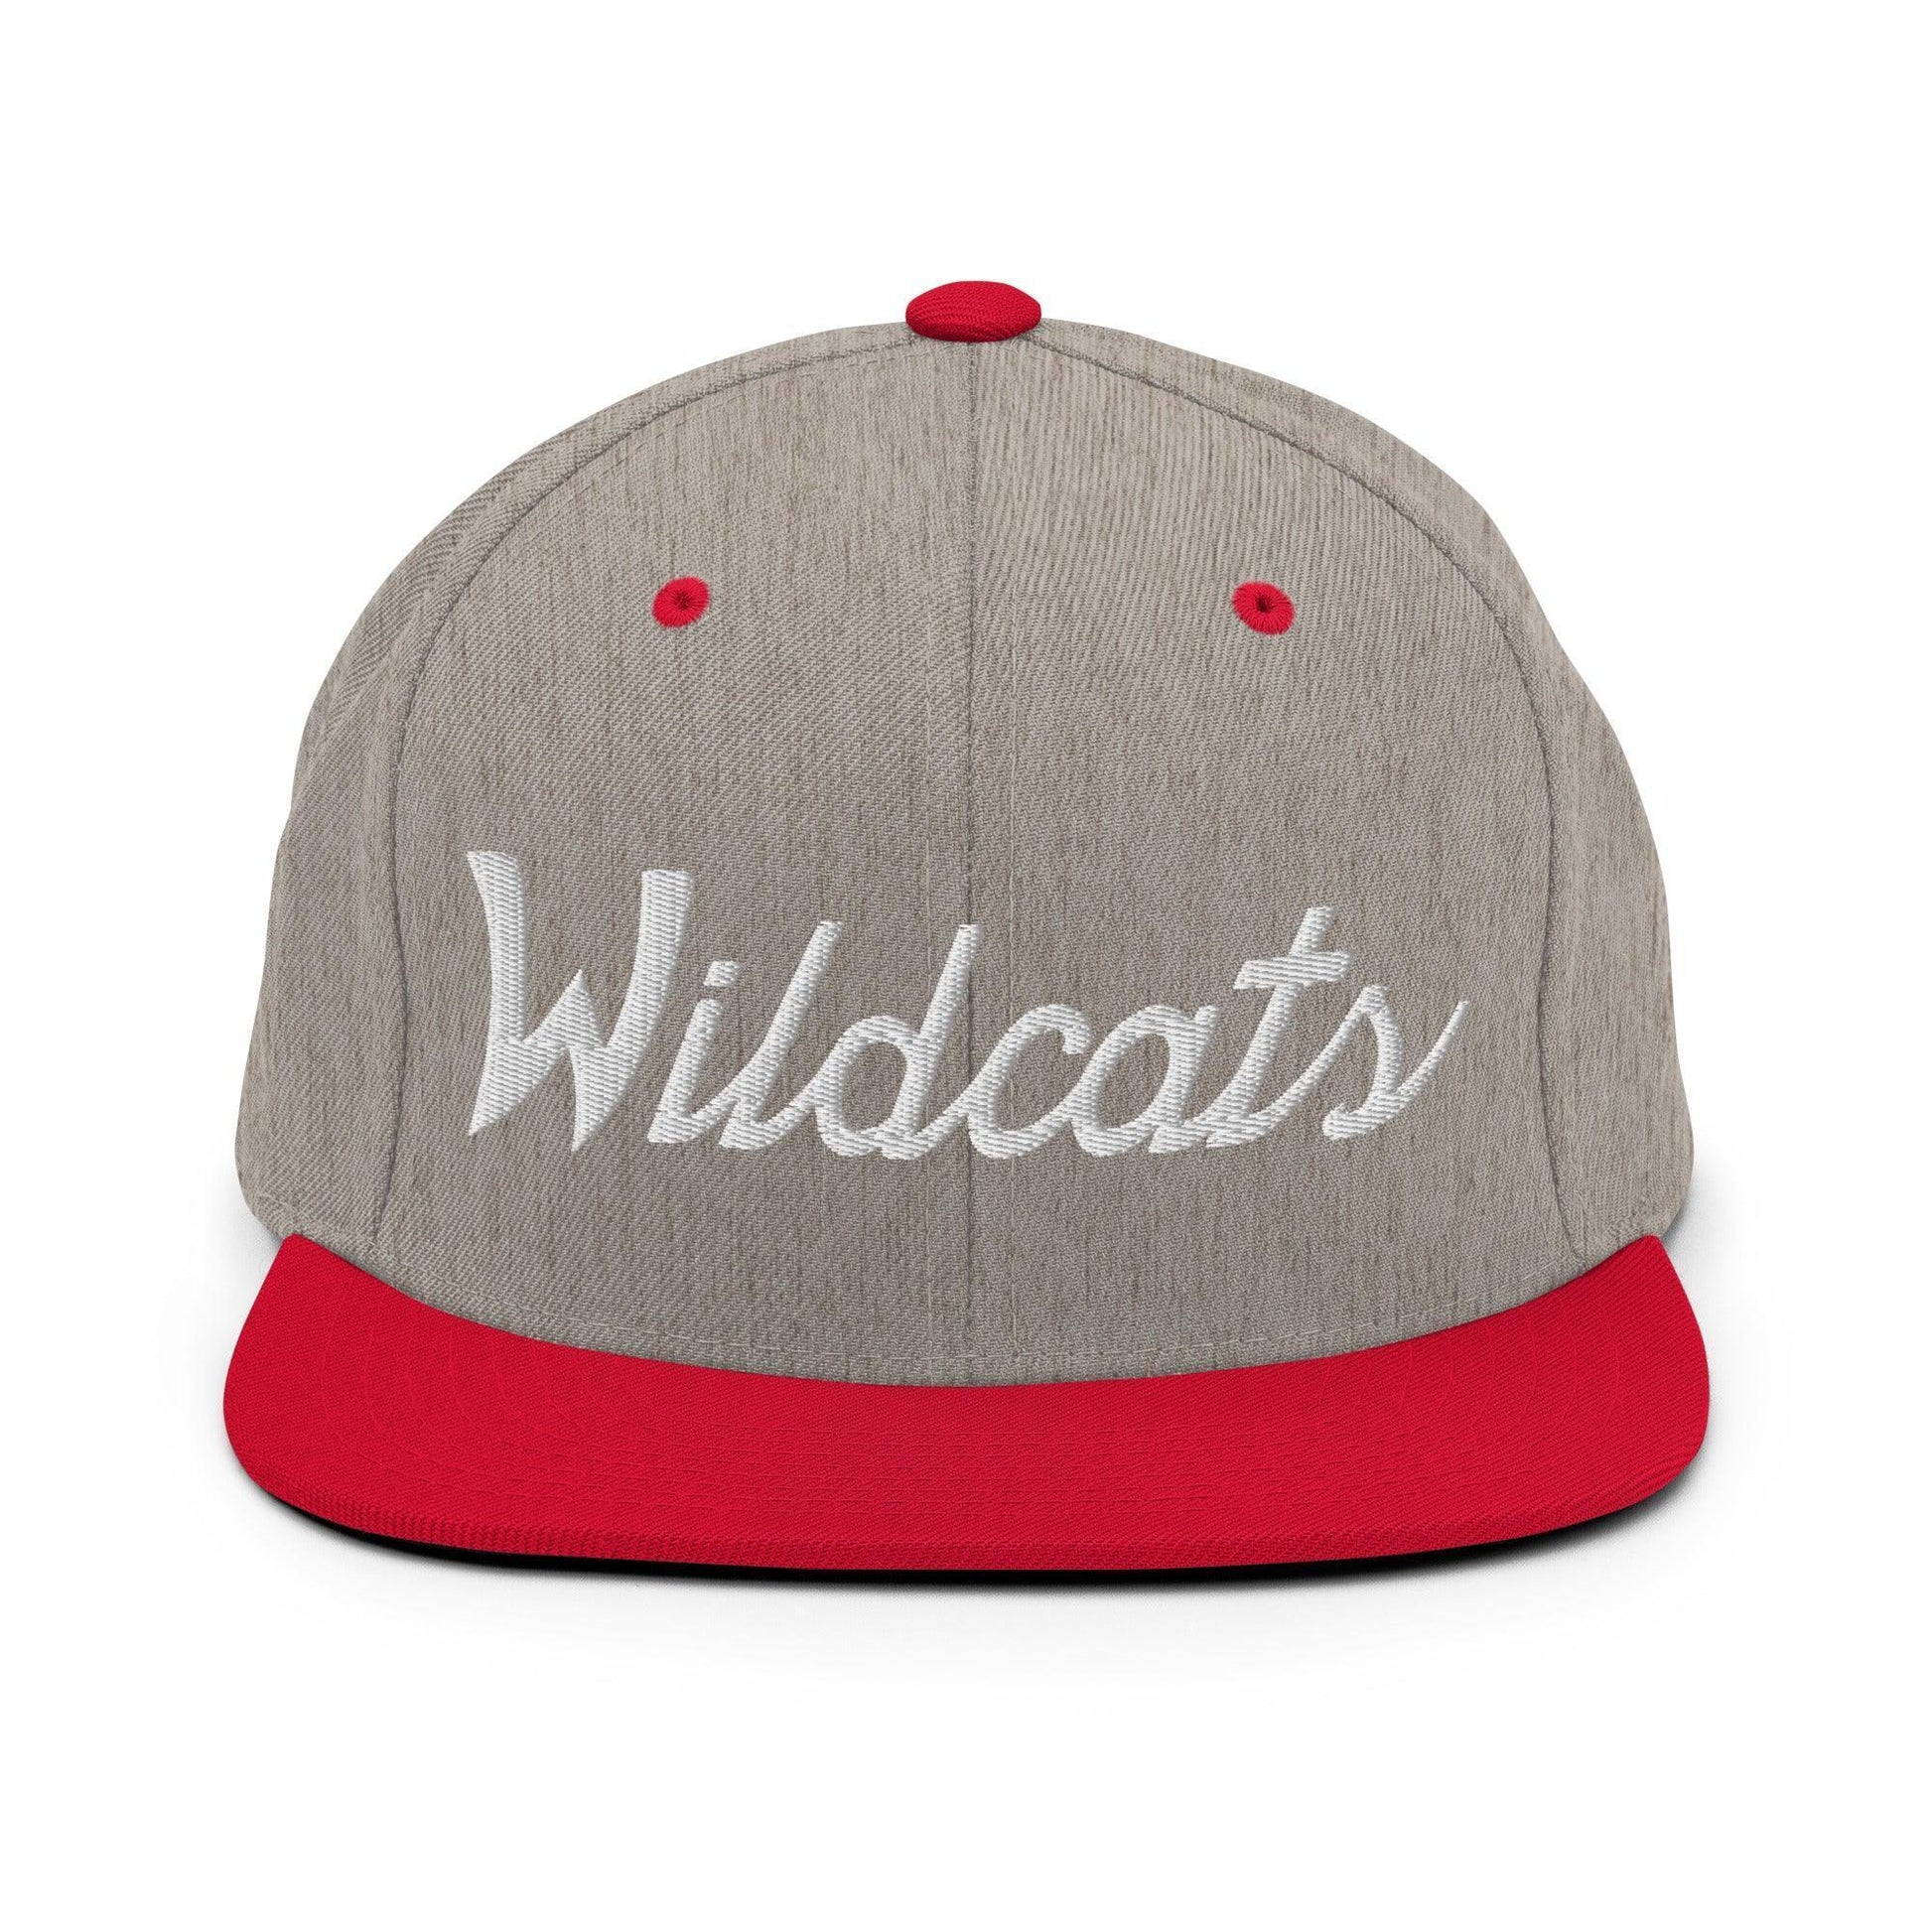 Wildcats School Mascot Script Snapback Hat Heather Grey/ Red